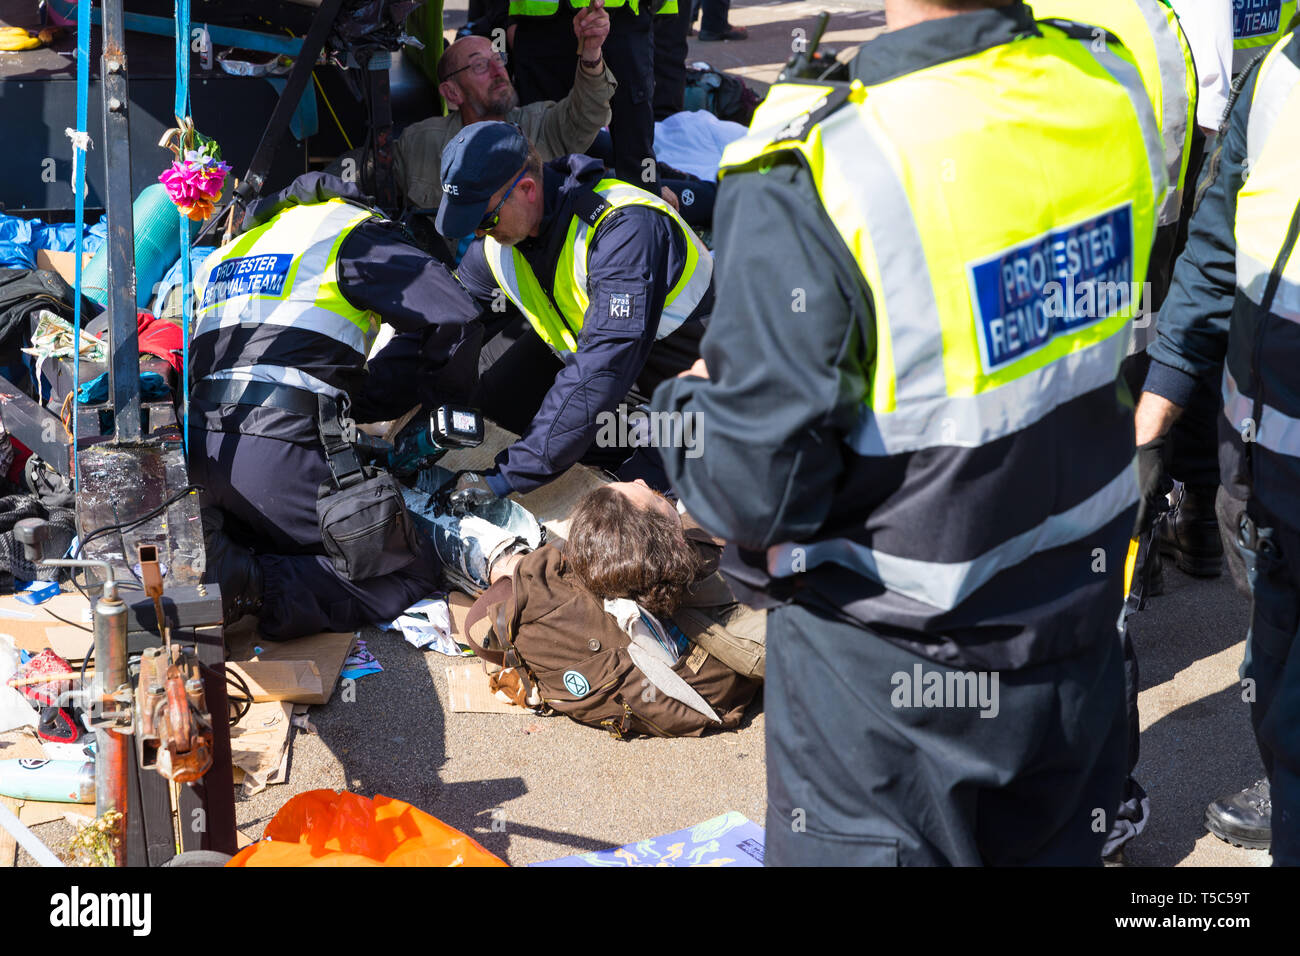 Les manifestants de libérer la police de l'embarcation à l'extinction dans le camp de la rébellion Oxford Circus, Londres Banque D'Images